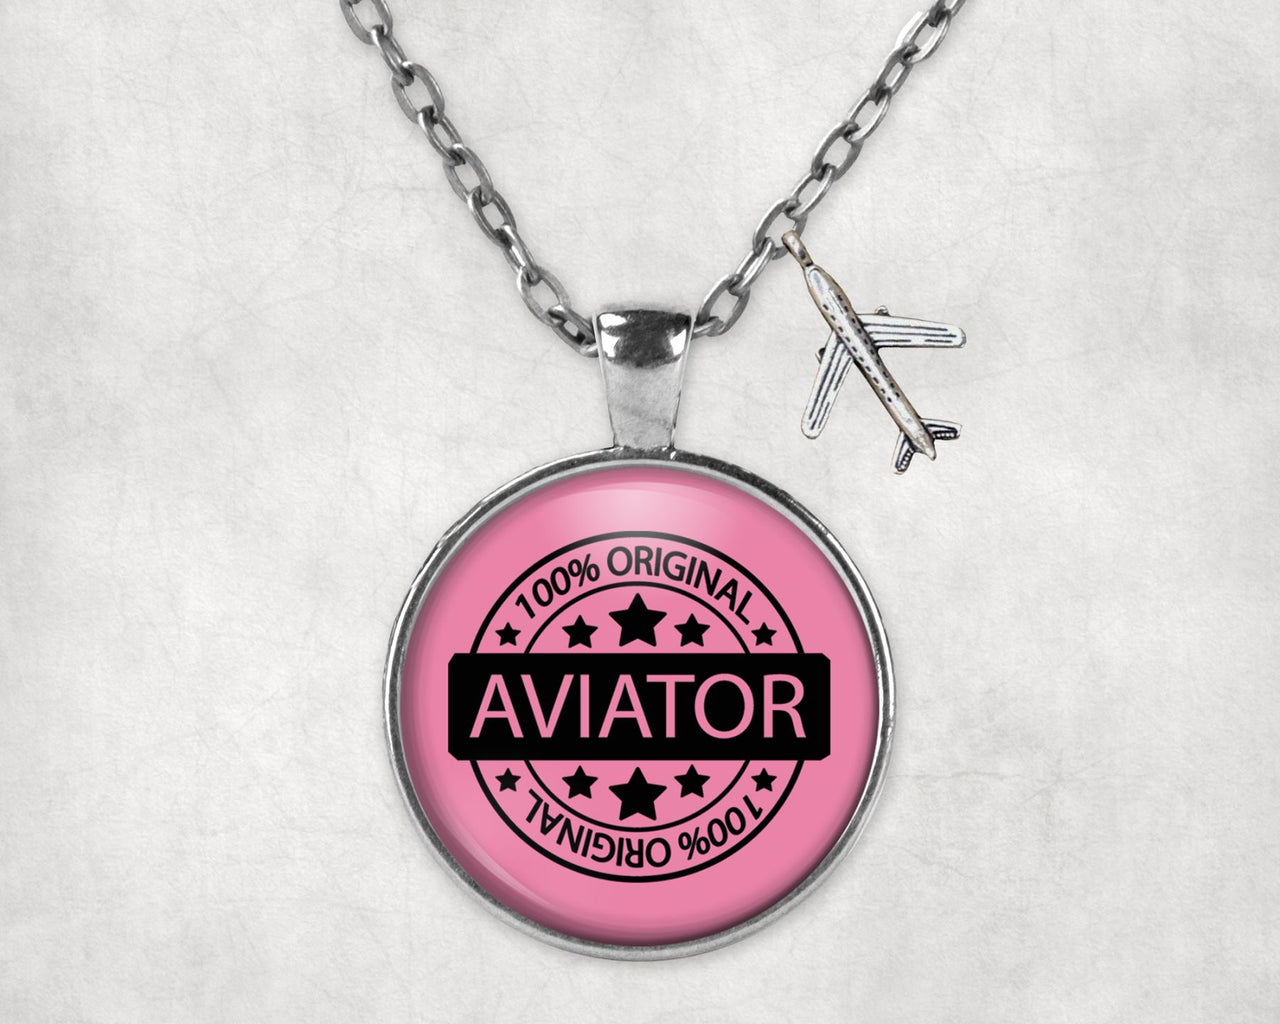 100 Original Aviator Designed Necklaces